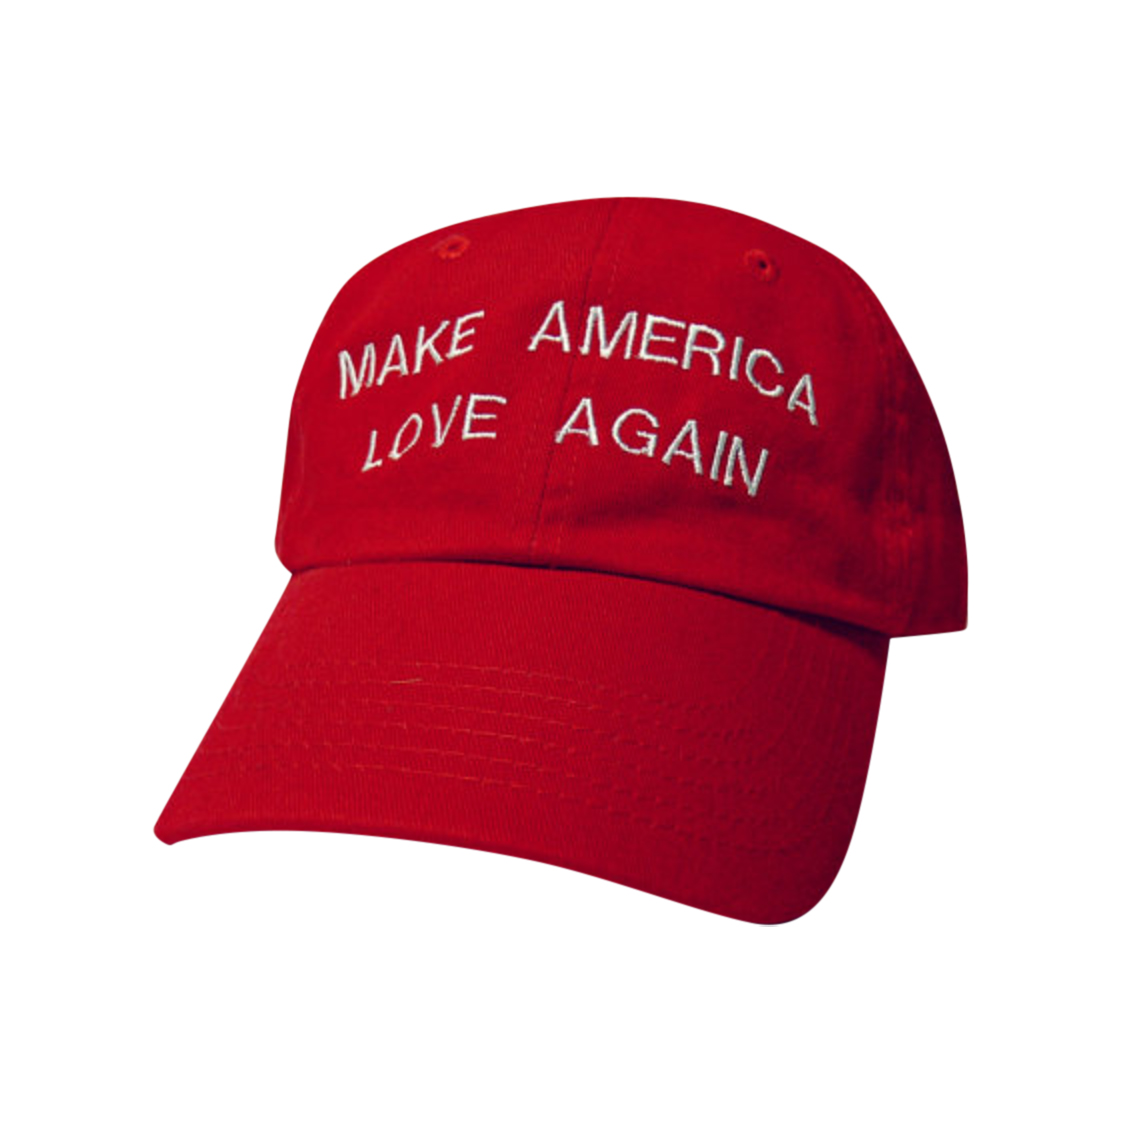 Make America Love Again Cap $18 